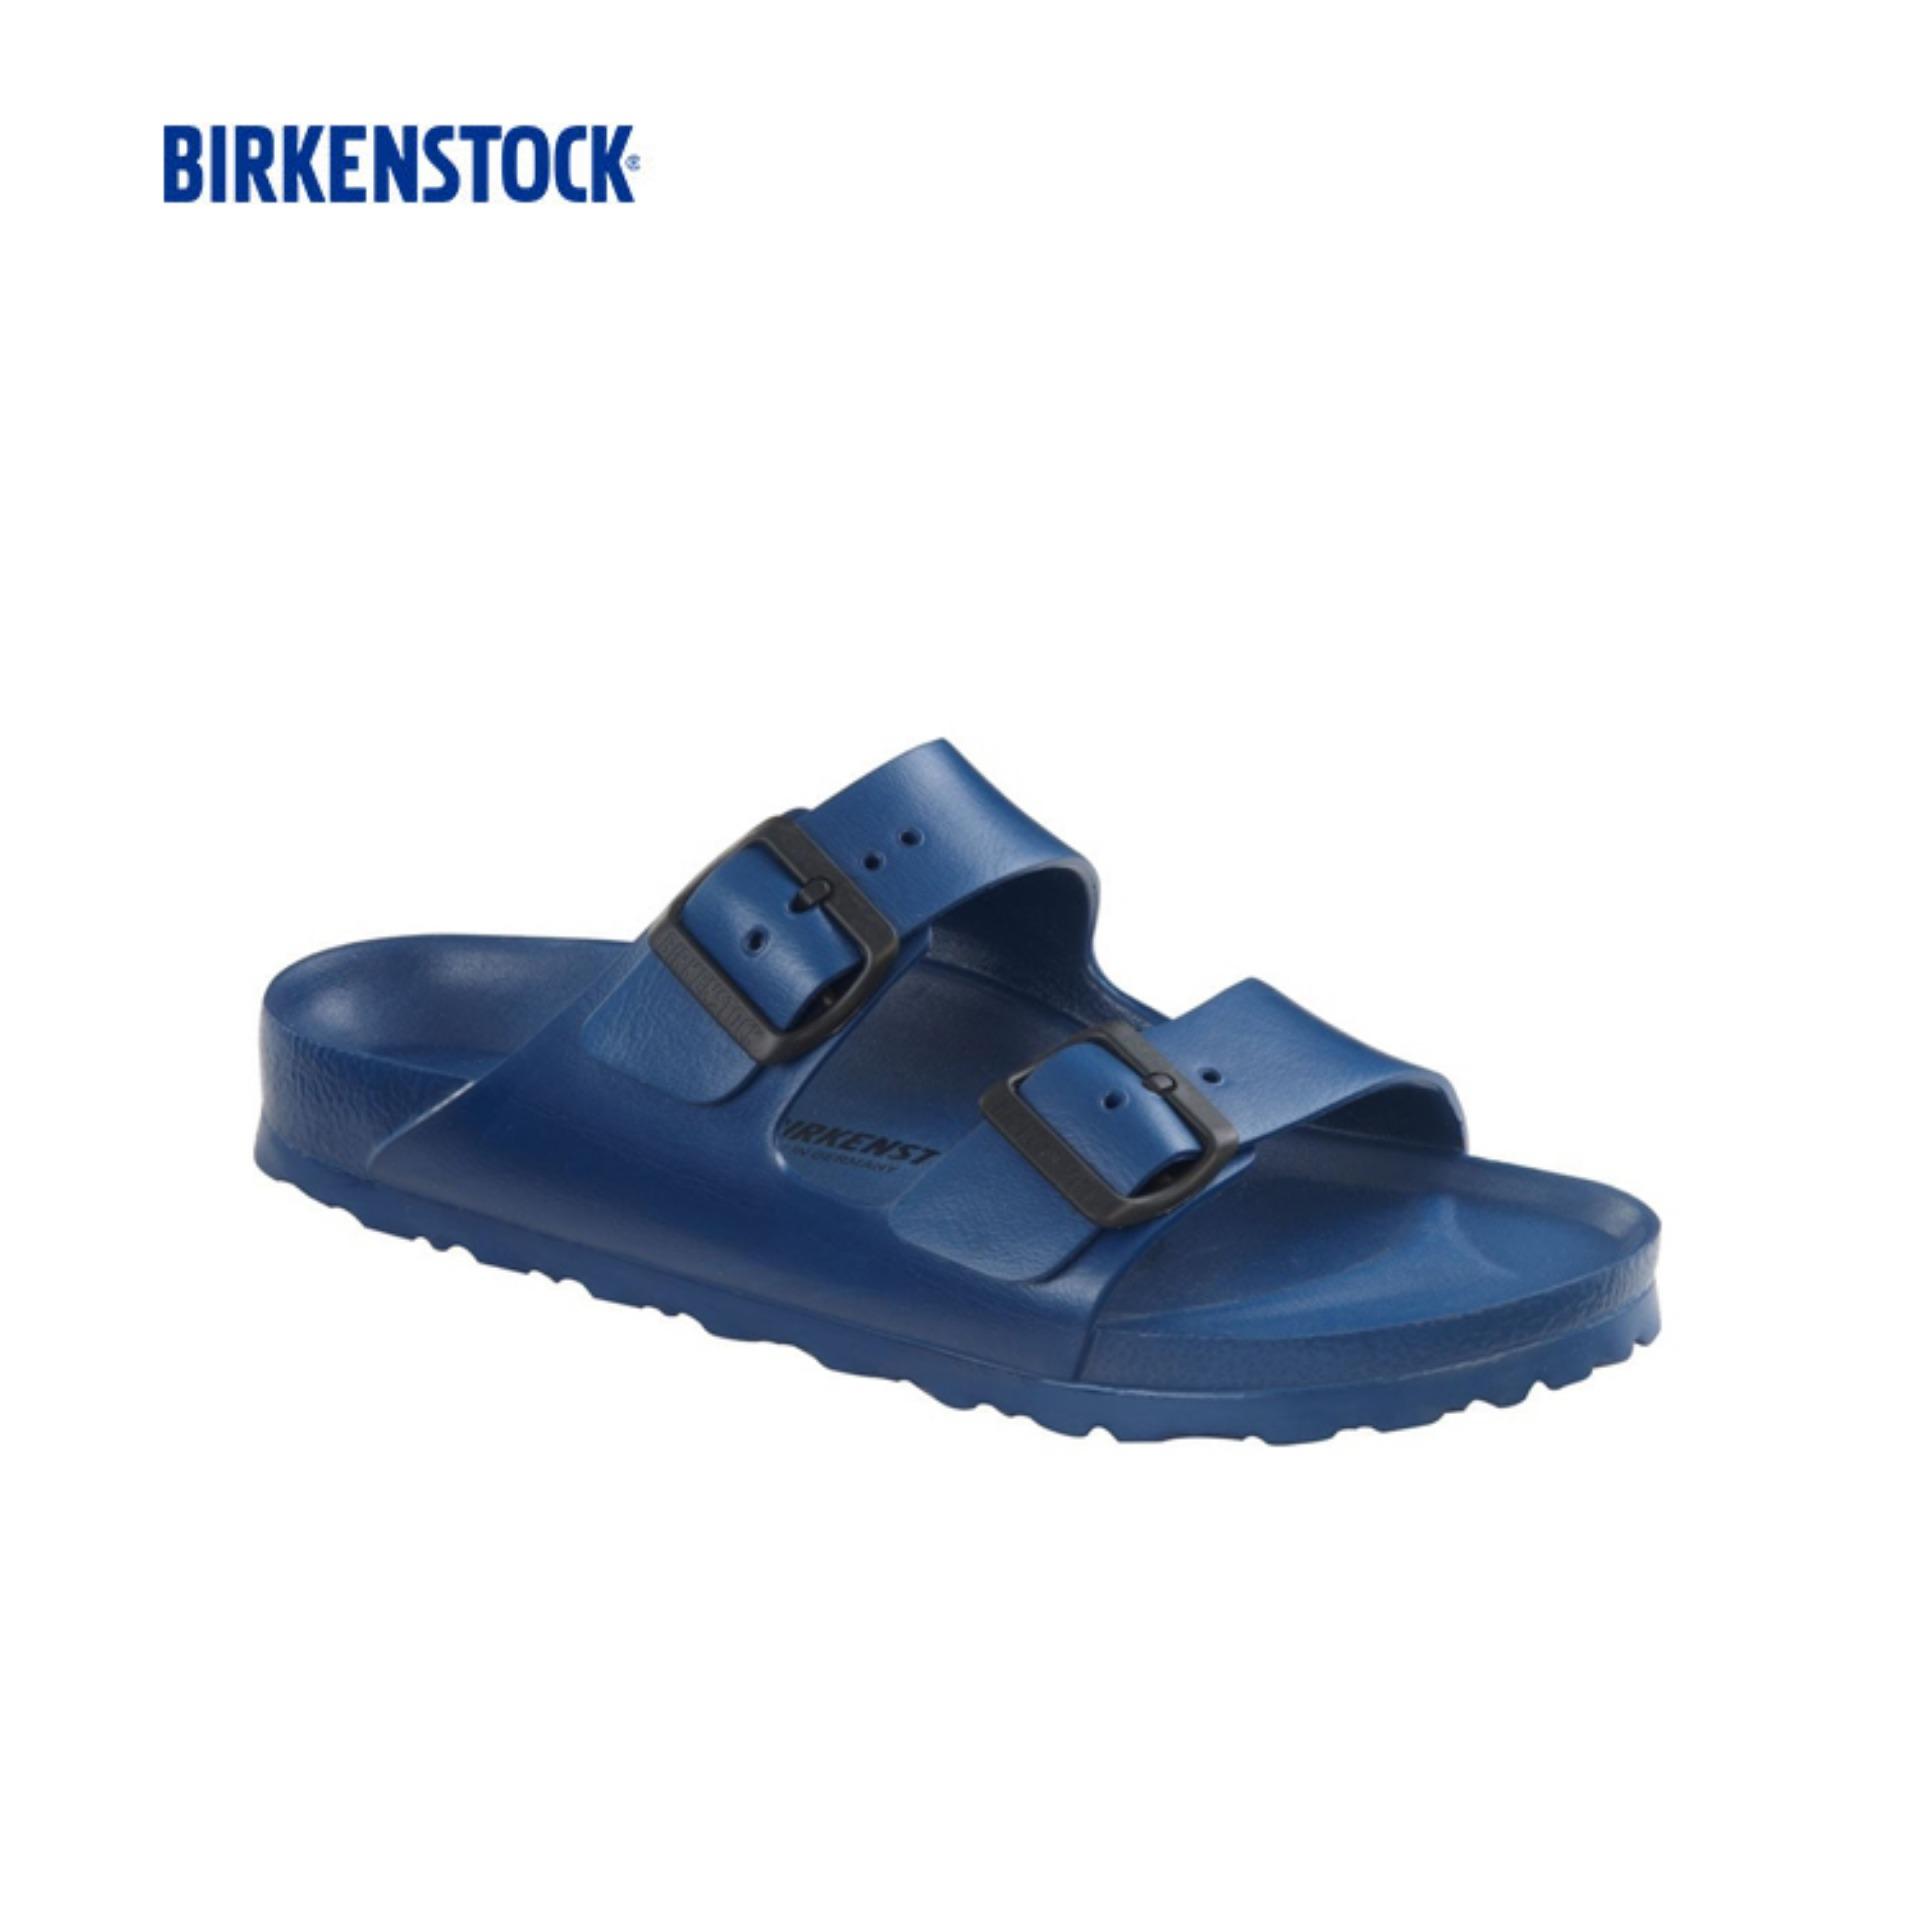 birkenstock men blue